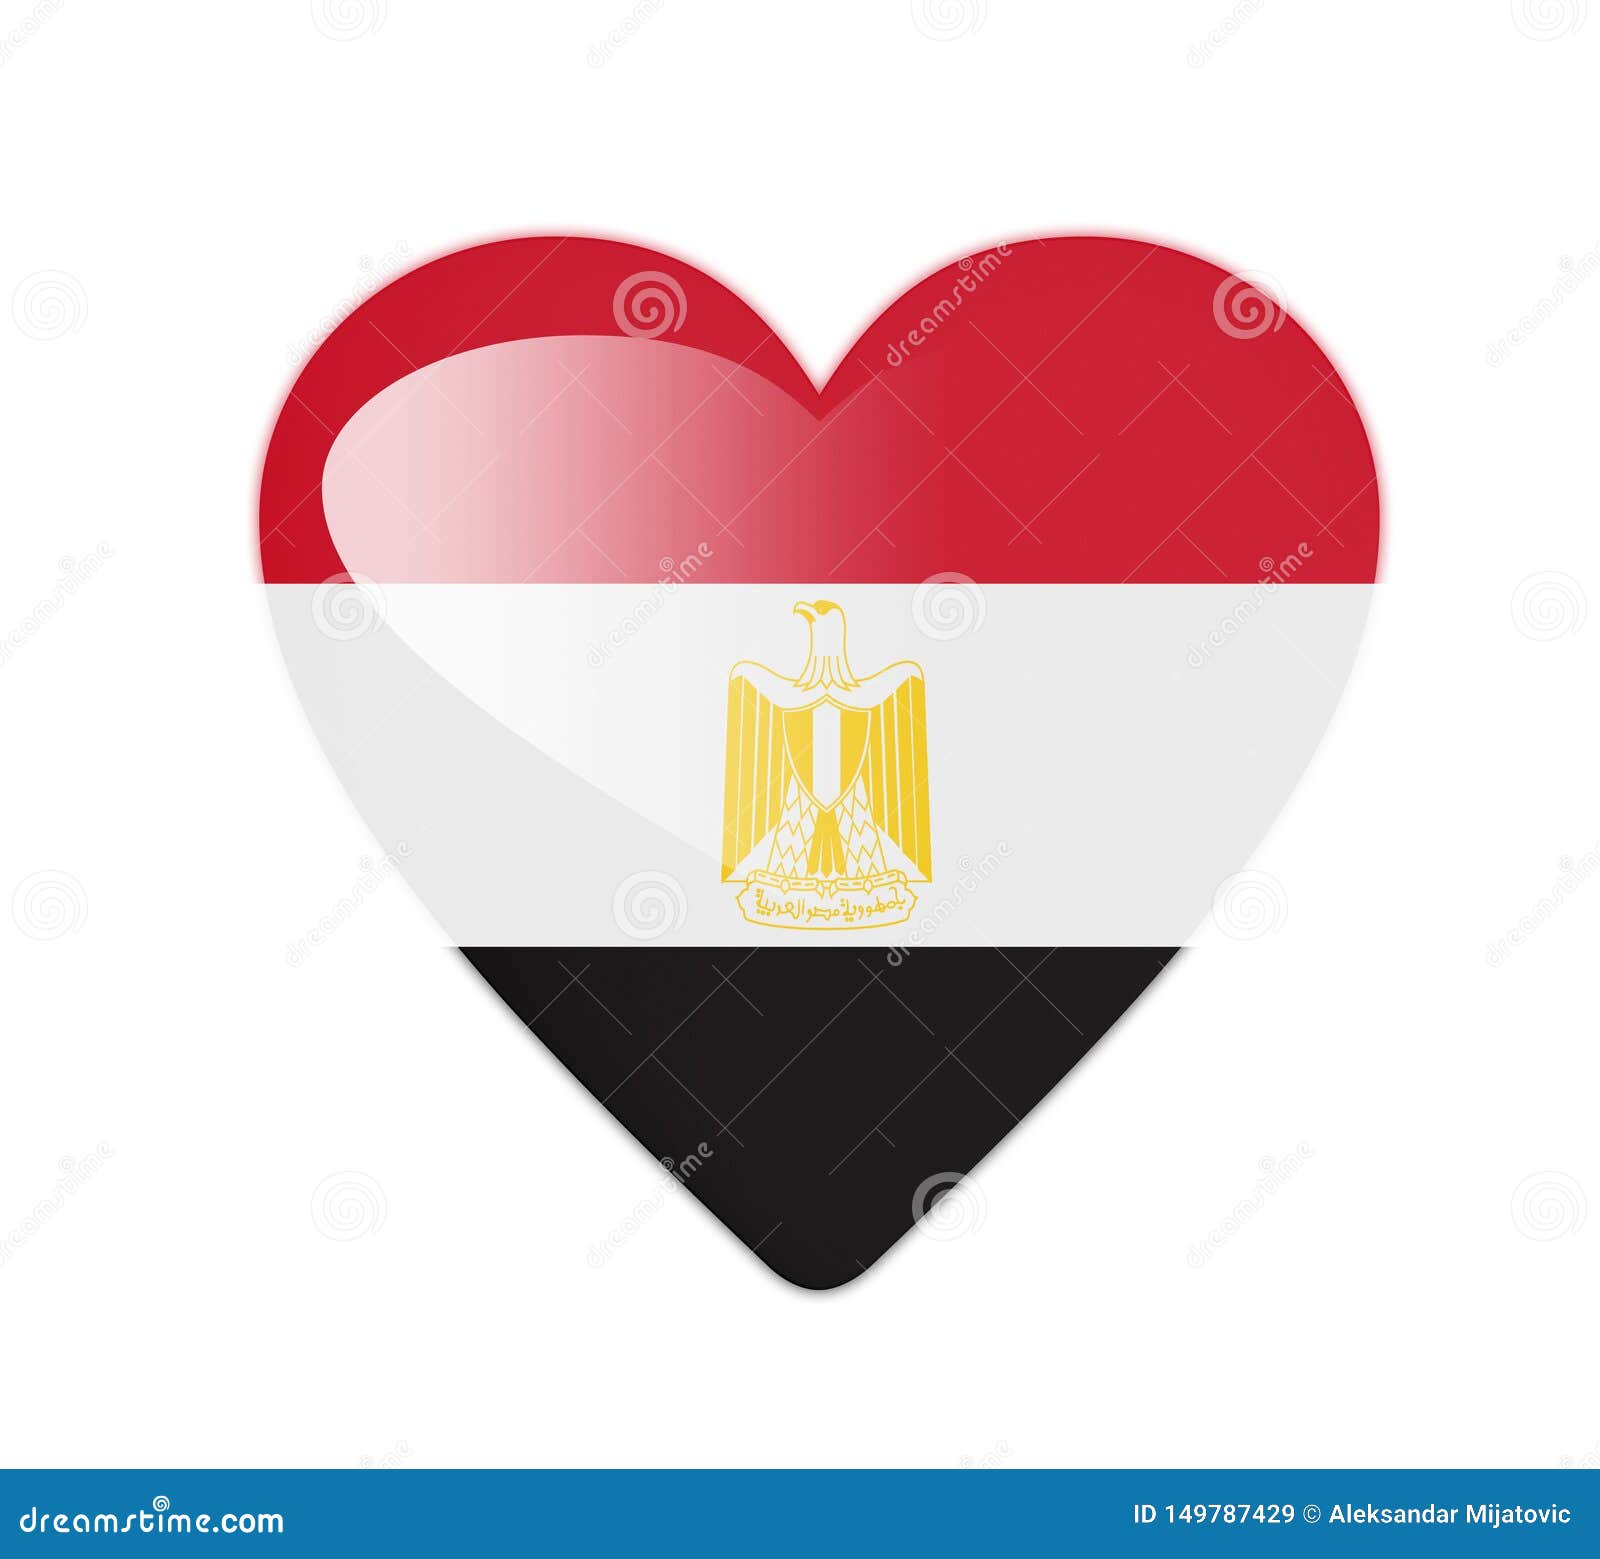 Egypt 3D heart shaped flag stock illustration. Illustration of design ...